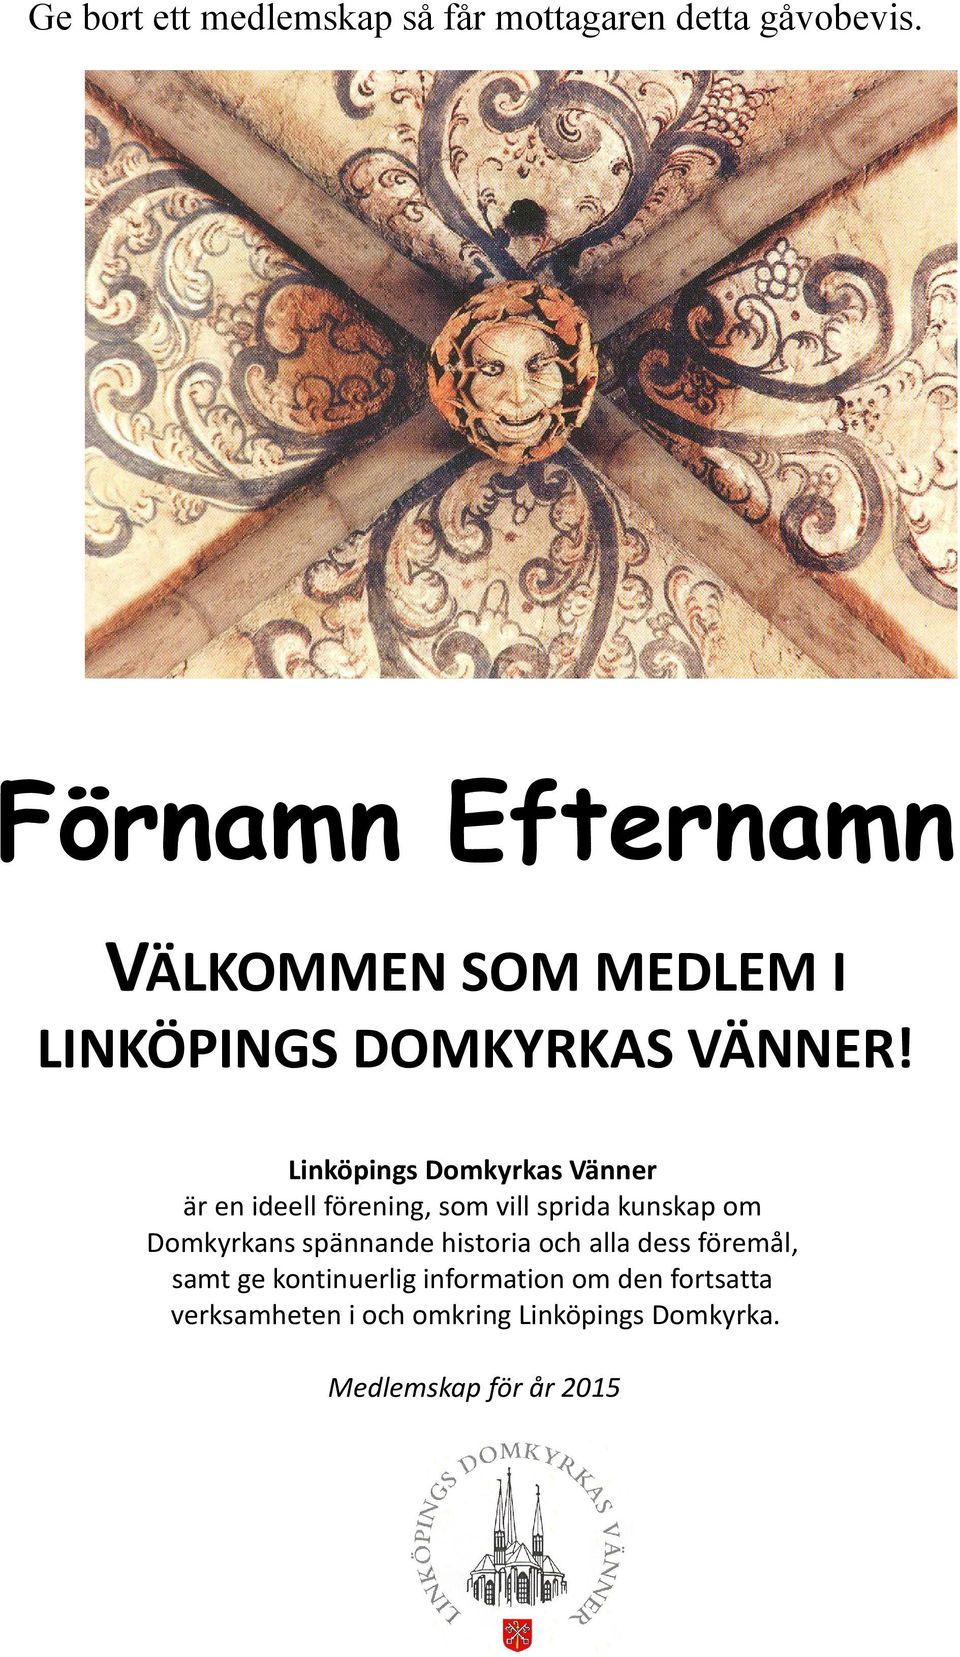 Linköpings Domkyrkas Vänner är en ideell förening, som vill sprida kunskap om Domkyrkans